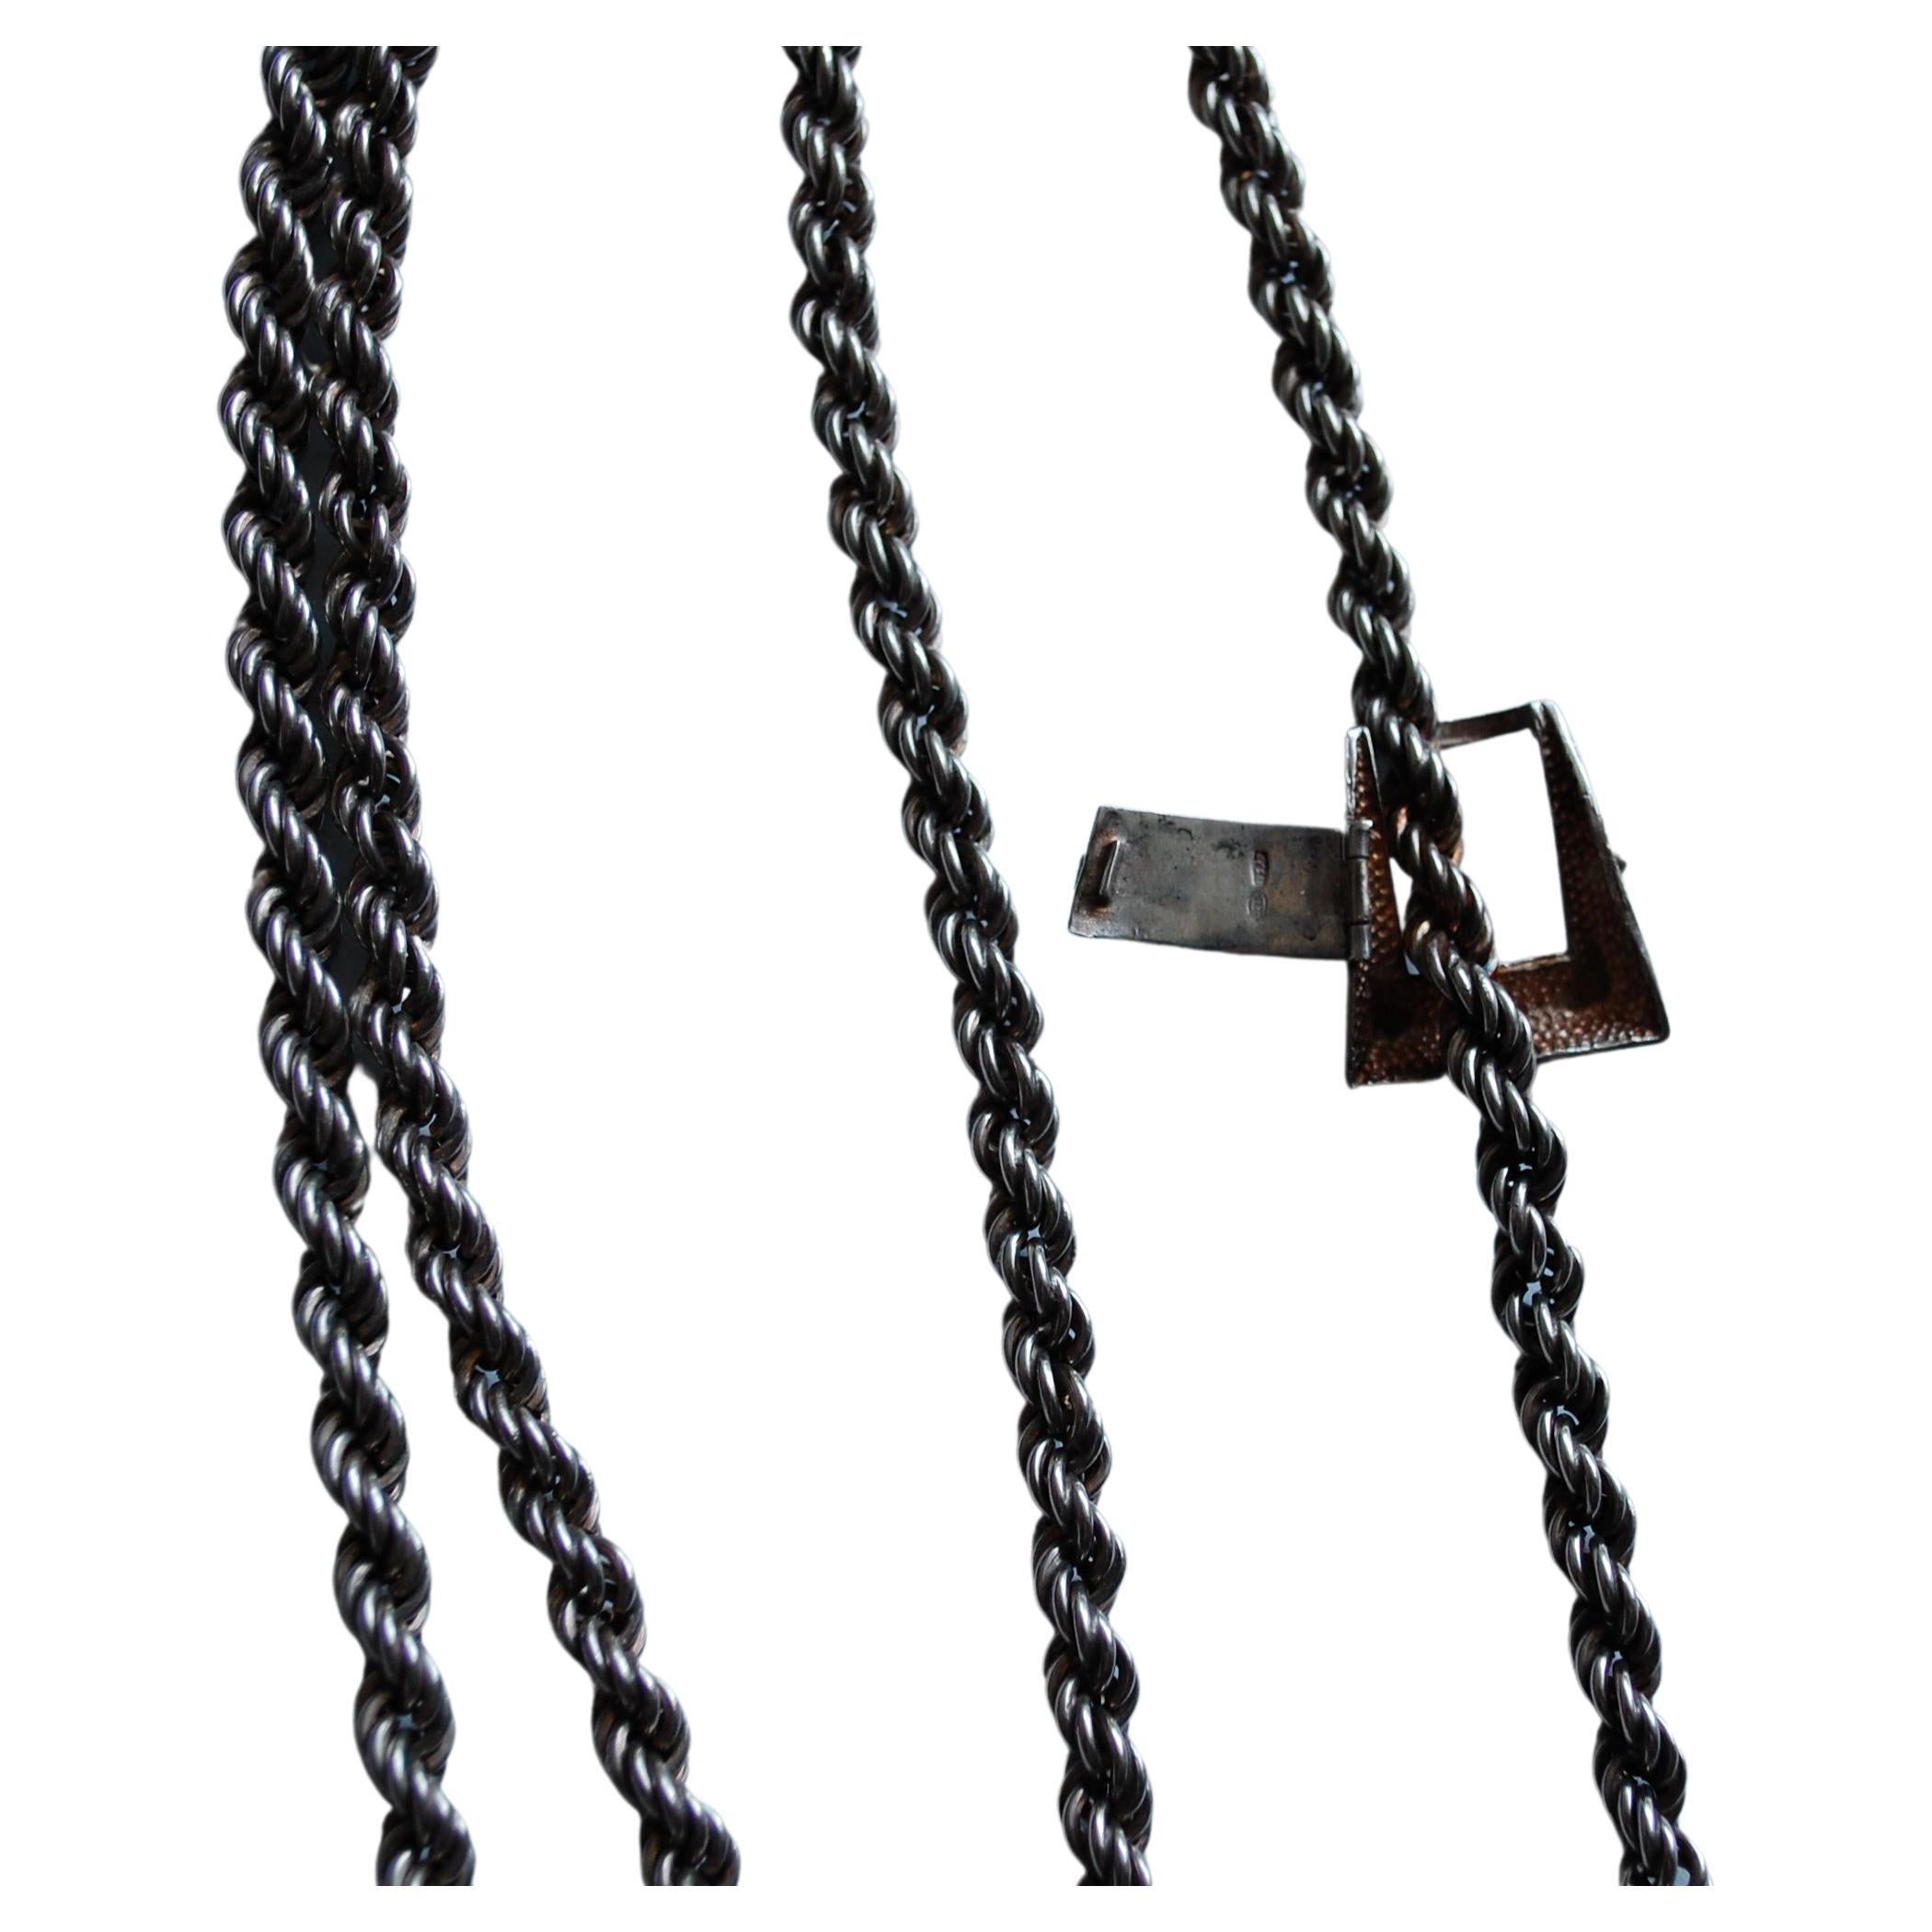 Vintage Italian Sterling 925, 103 AR (Arezzo in Italien) Seil Halskette mit Fransen an jedem Ende eine Schnalle als Schließe. Gesamtlänge 43 Zoll, 0,25 breit, etwa 100 Gramm. Sie haben zwei Möglichkeiten, es lang oder kurz zu tragen.